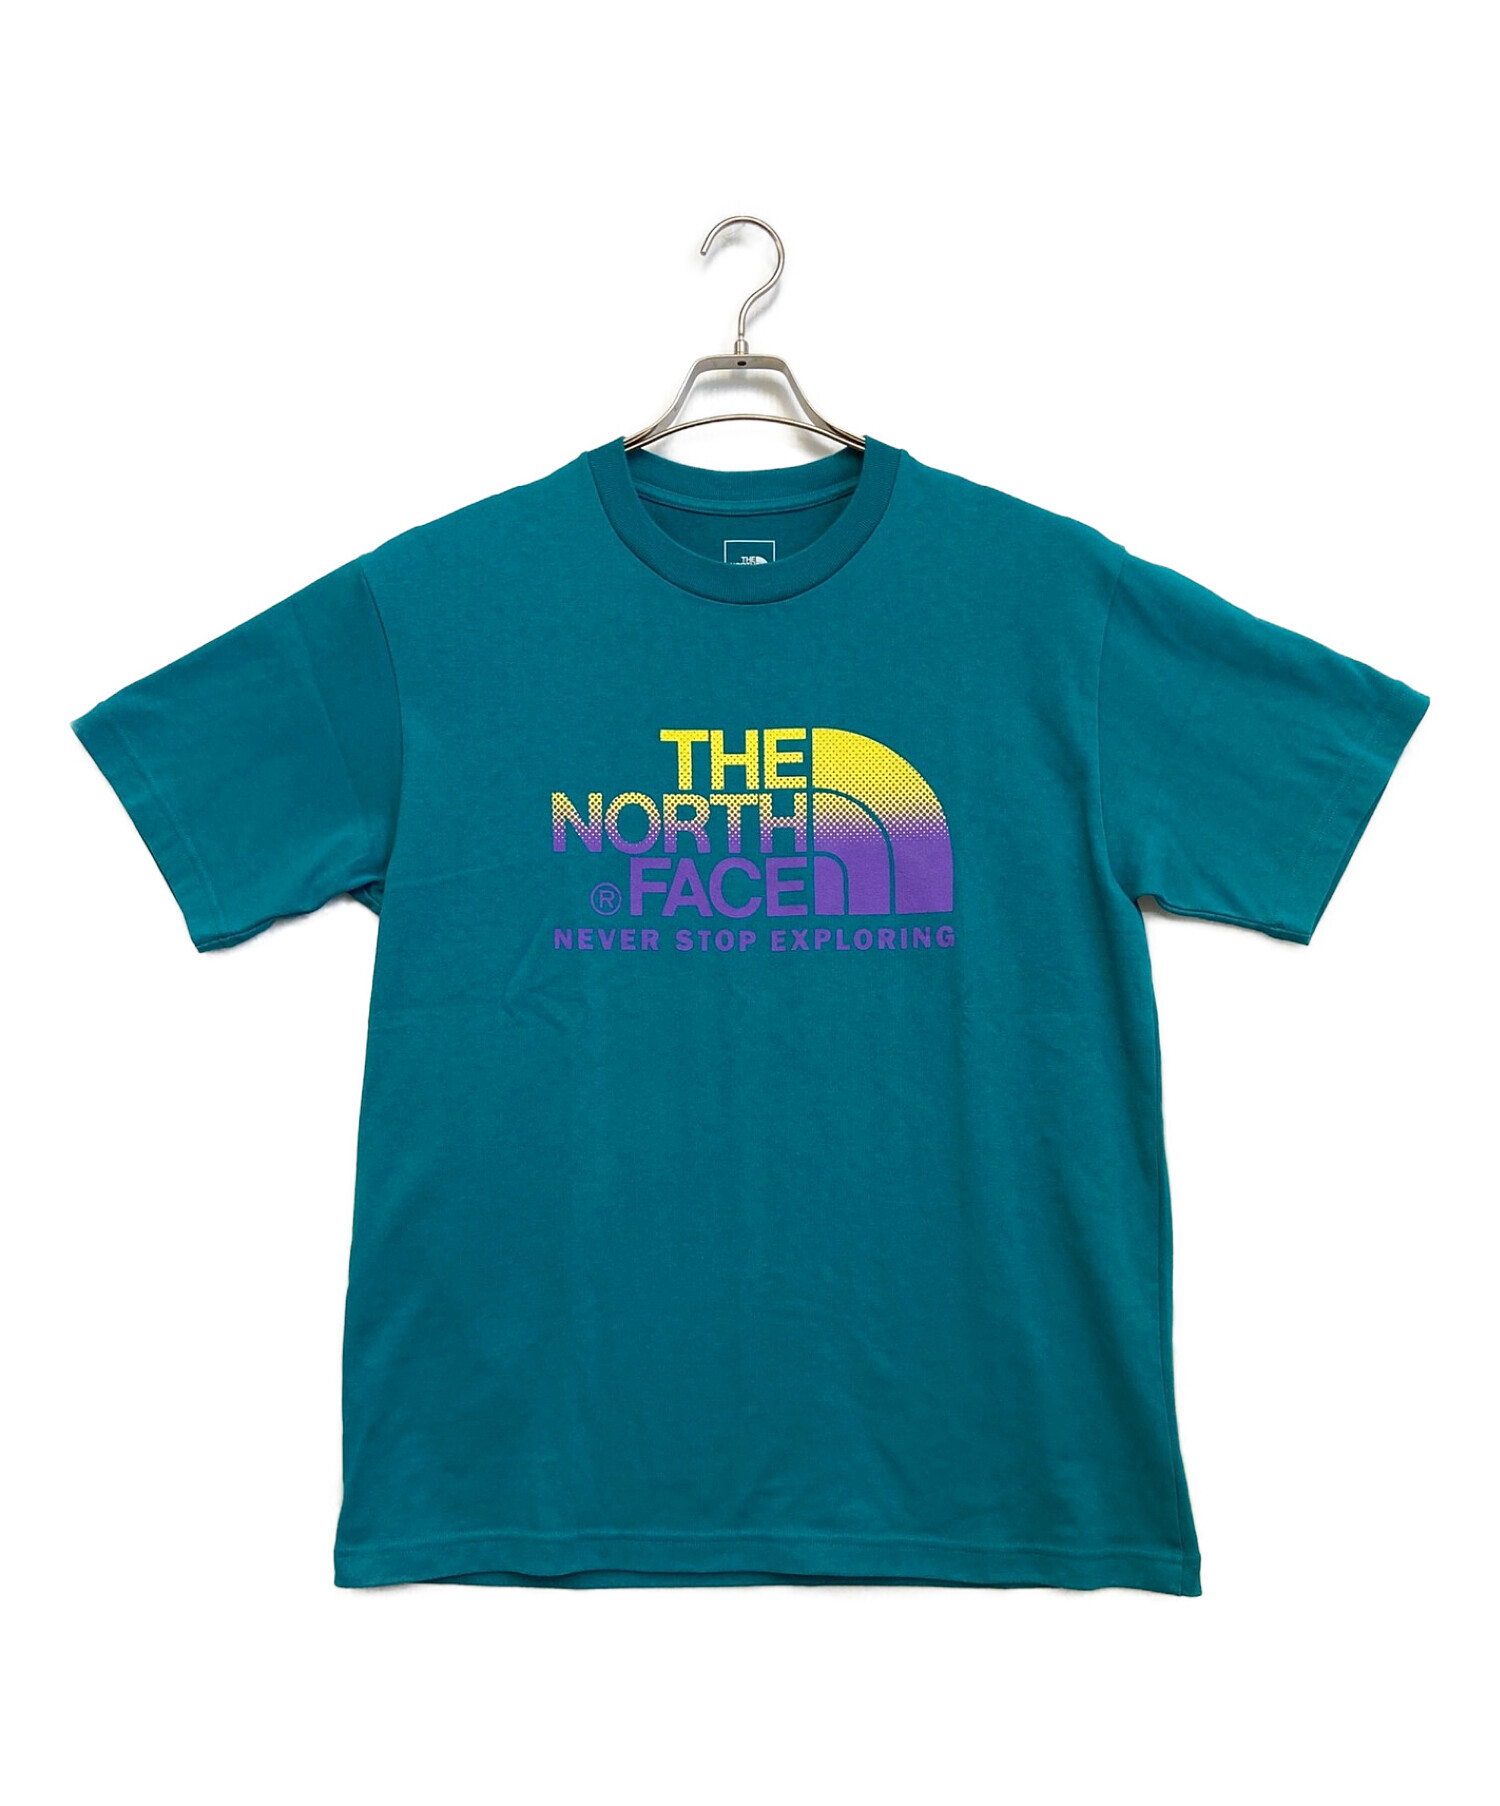 THE NORTH FACE (ザ ノース フェイス) プリントTシャツ ブルー サイズ:XL